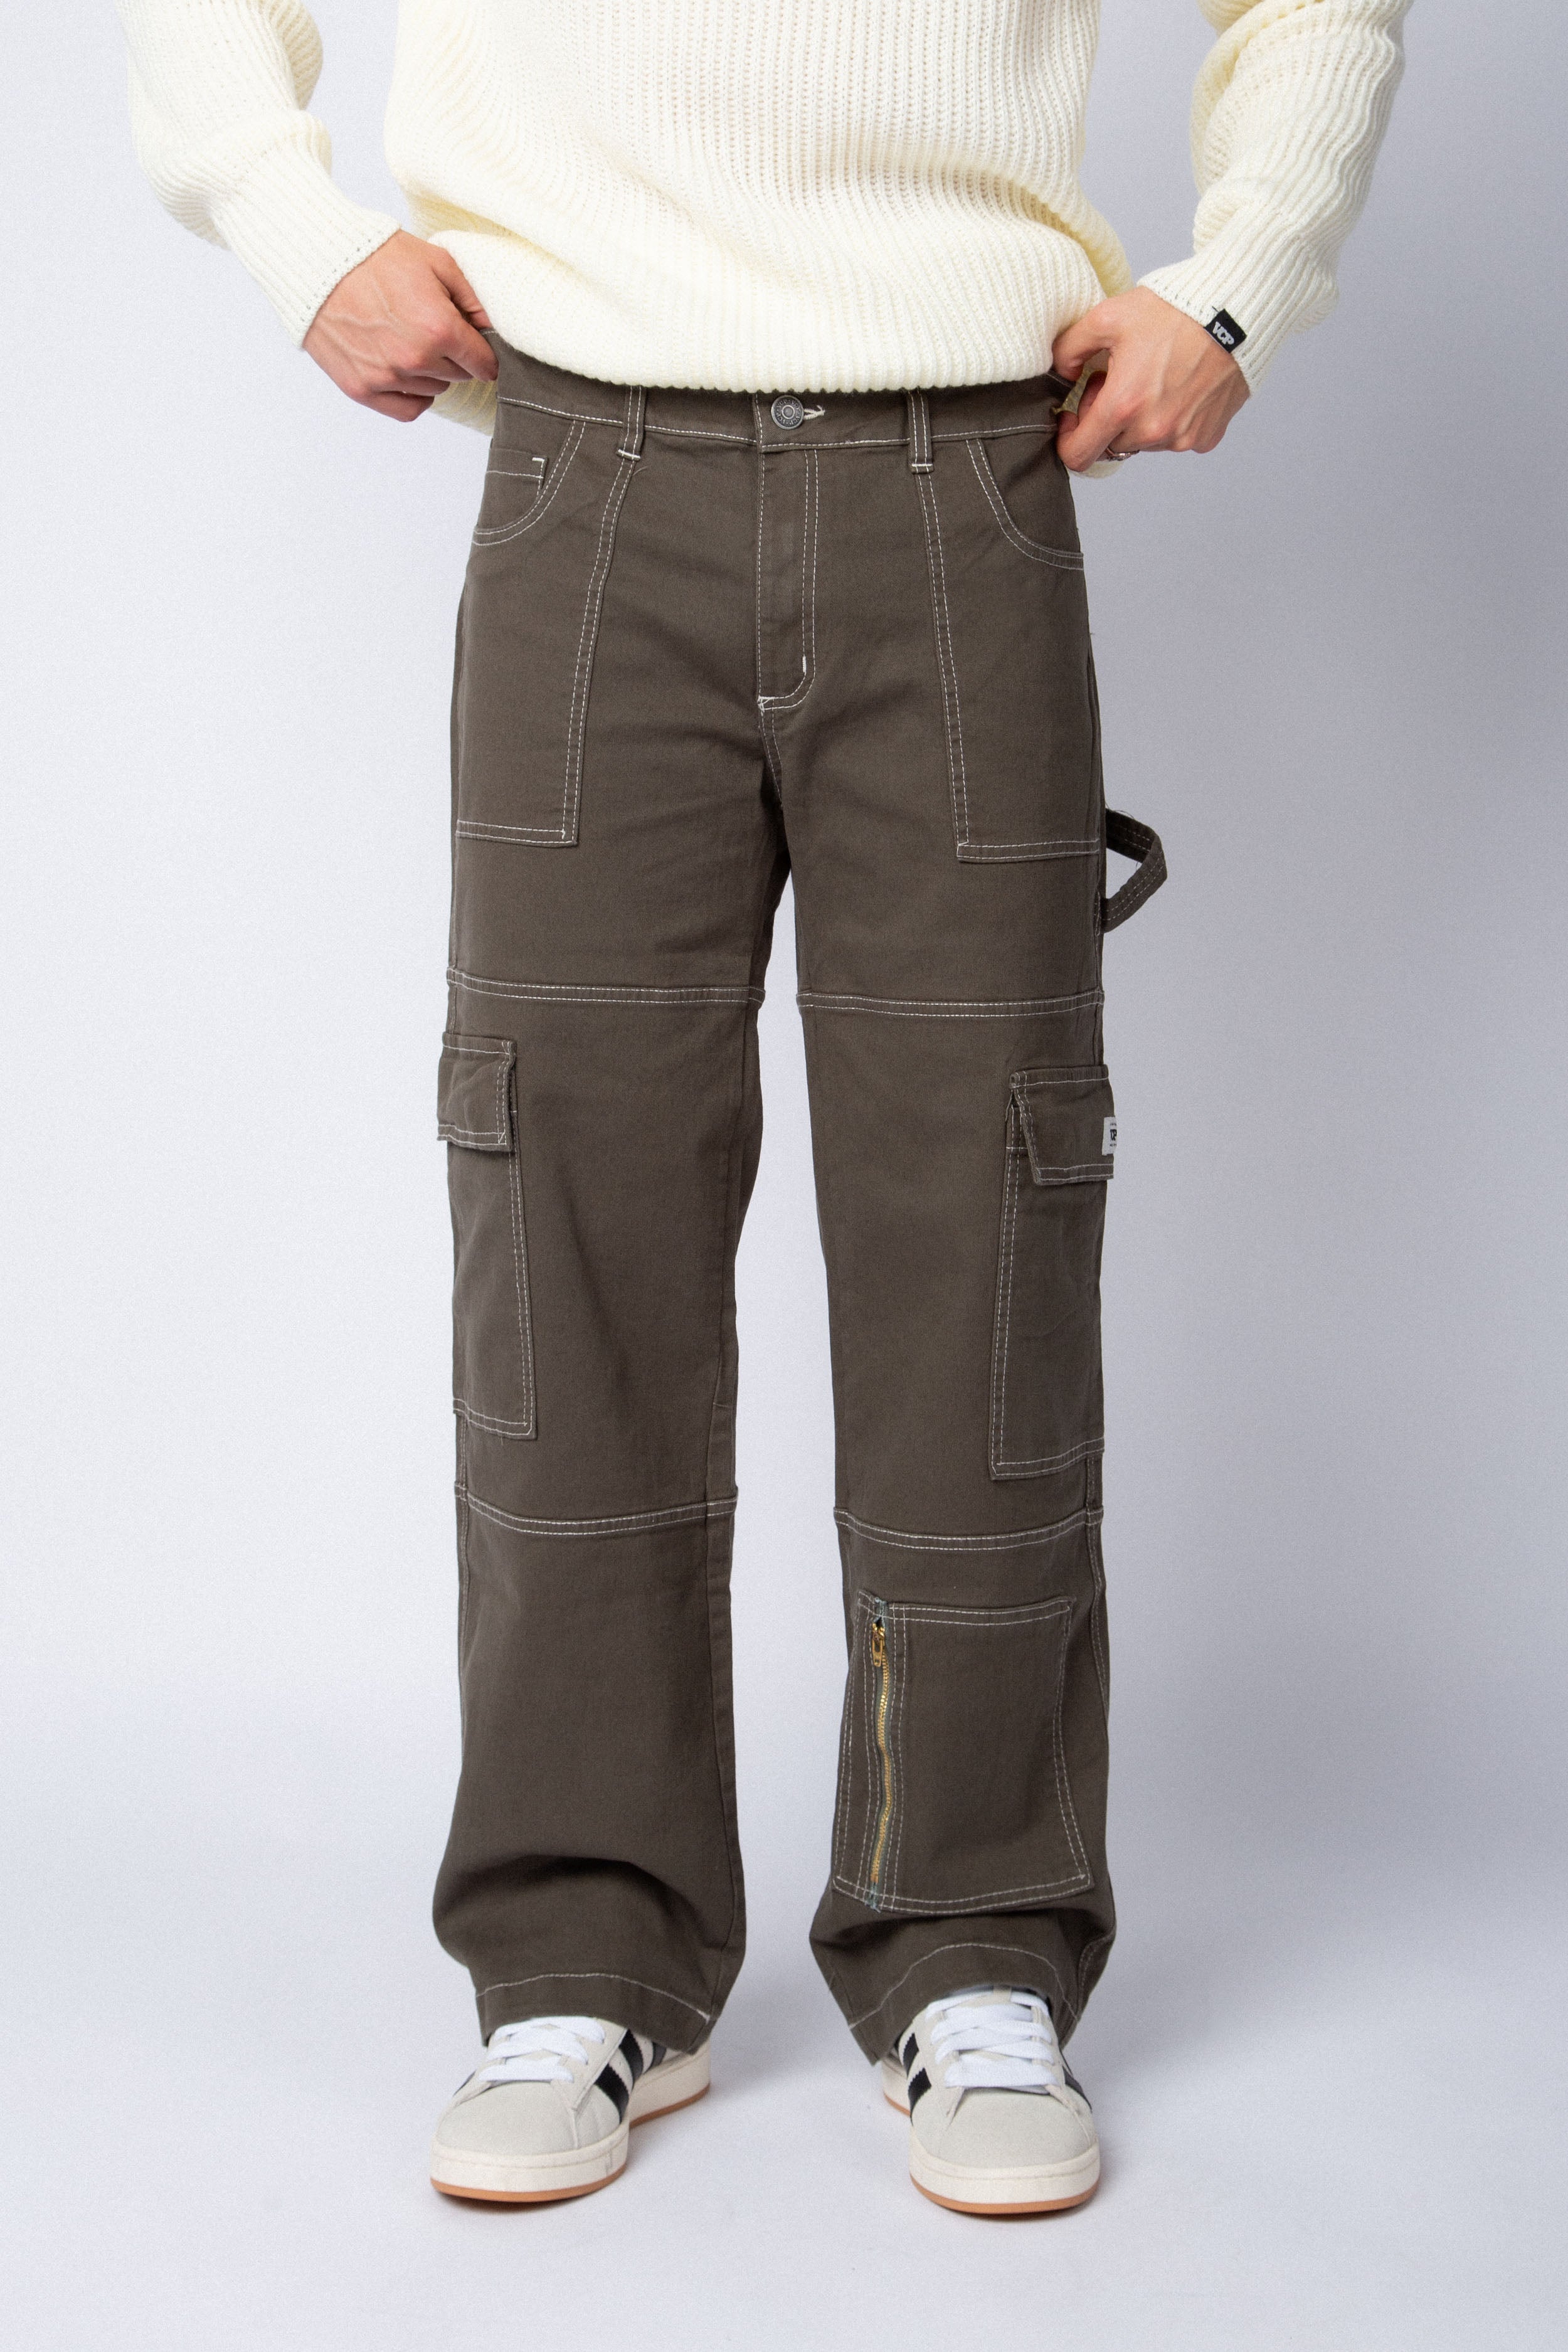 Pantalon Carpintero Bronco Militar